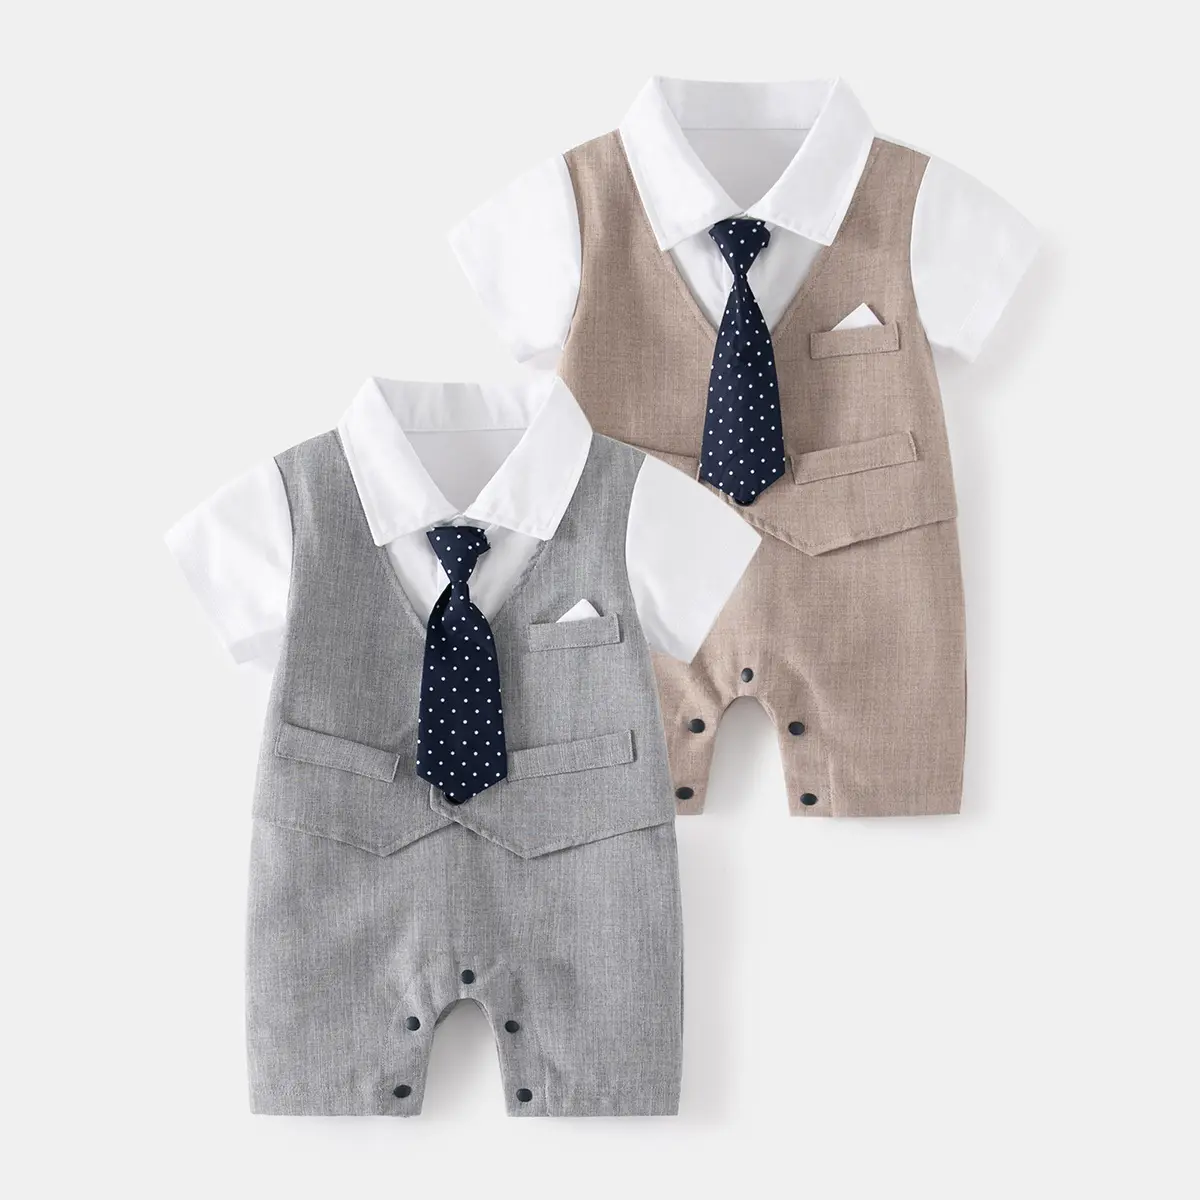 Produsen Cina musim panas anak laki-laki kecil setelan kemeja putih lengan pendek dengan dasi pakaian set